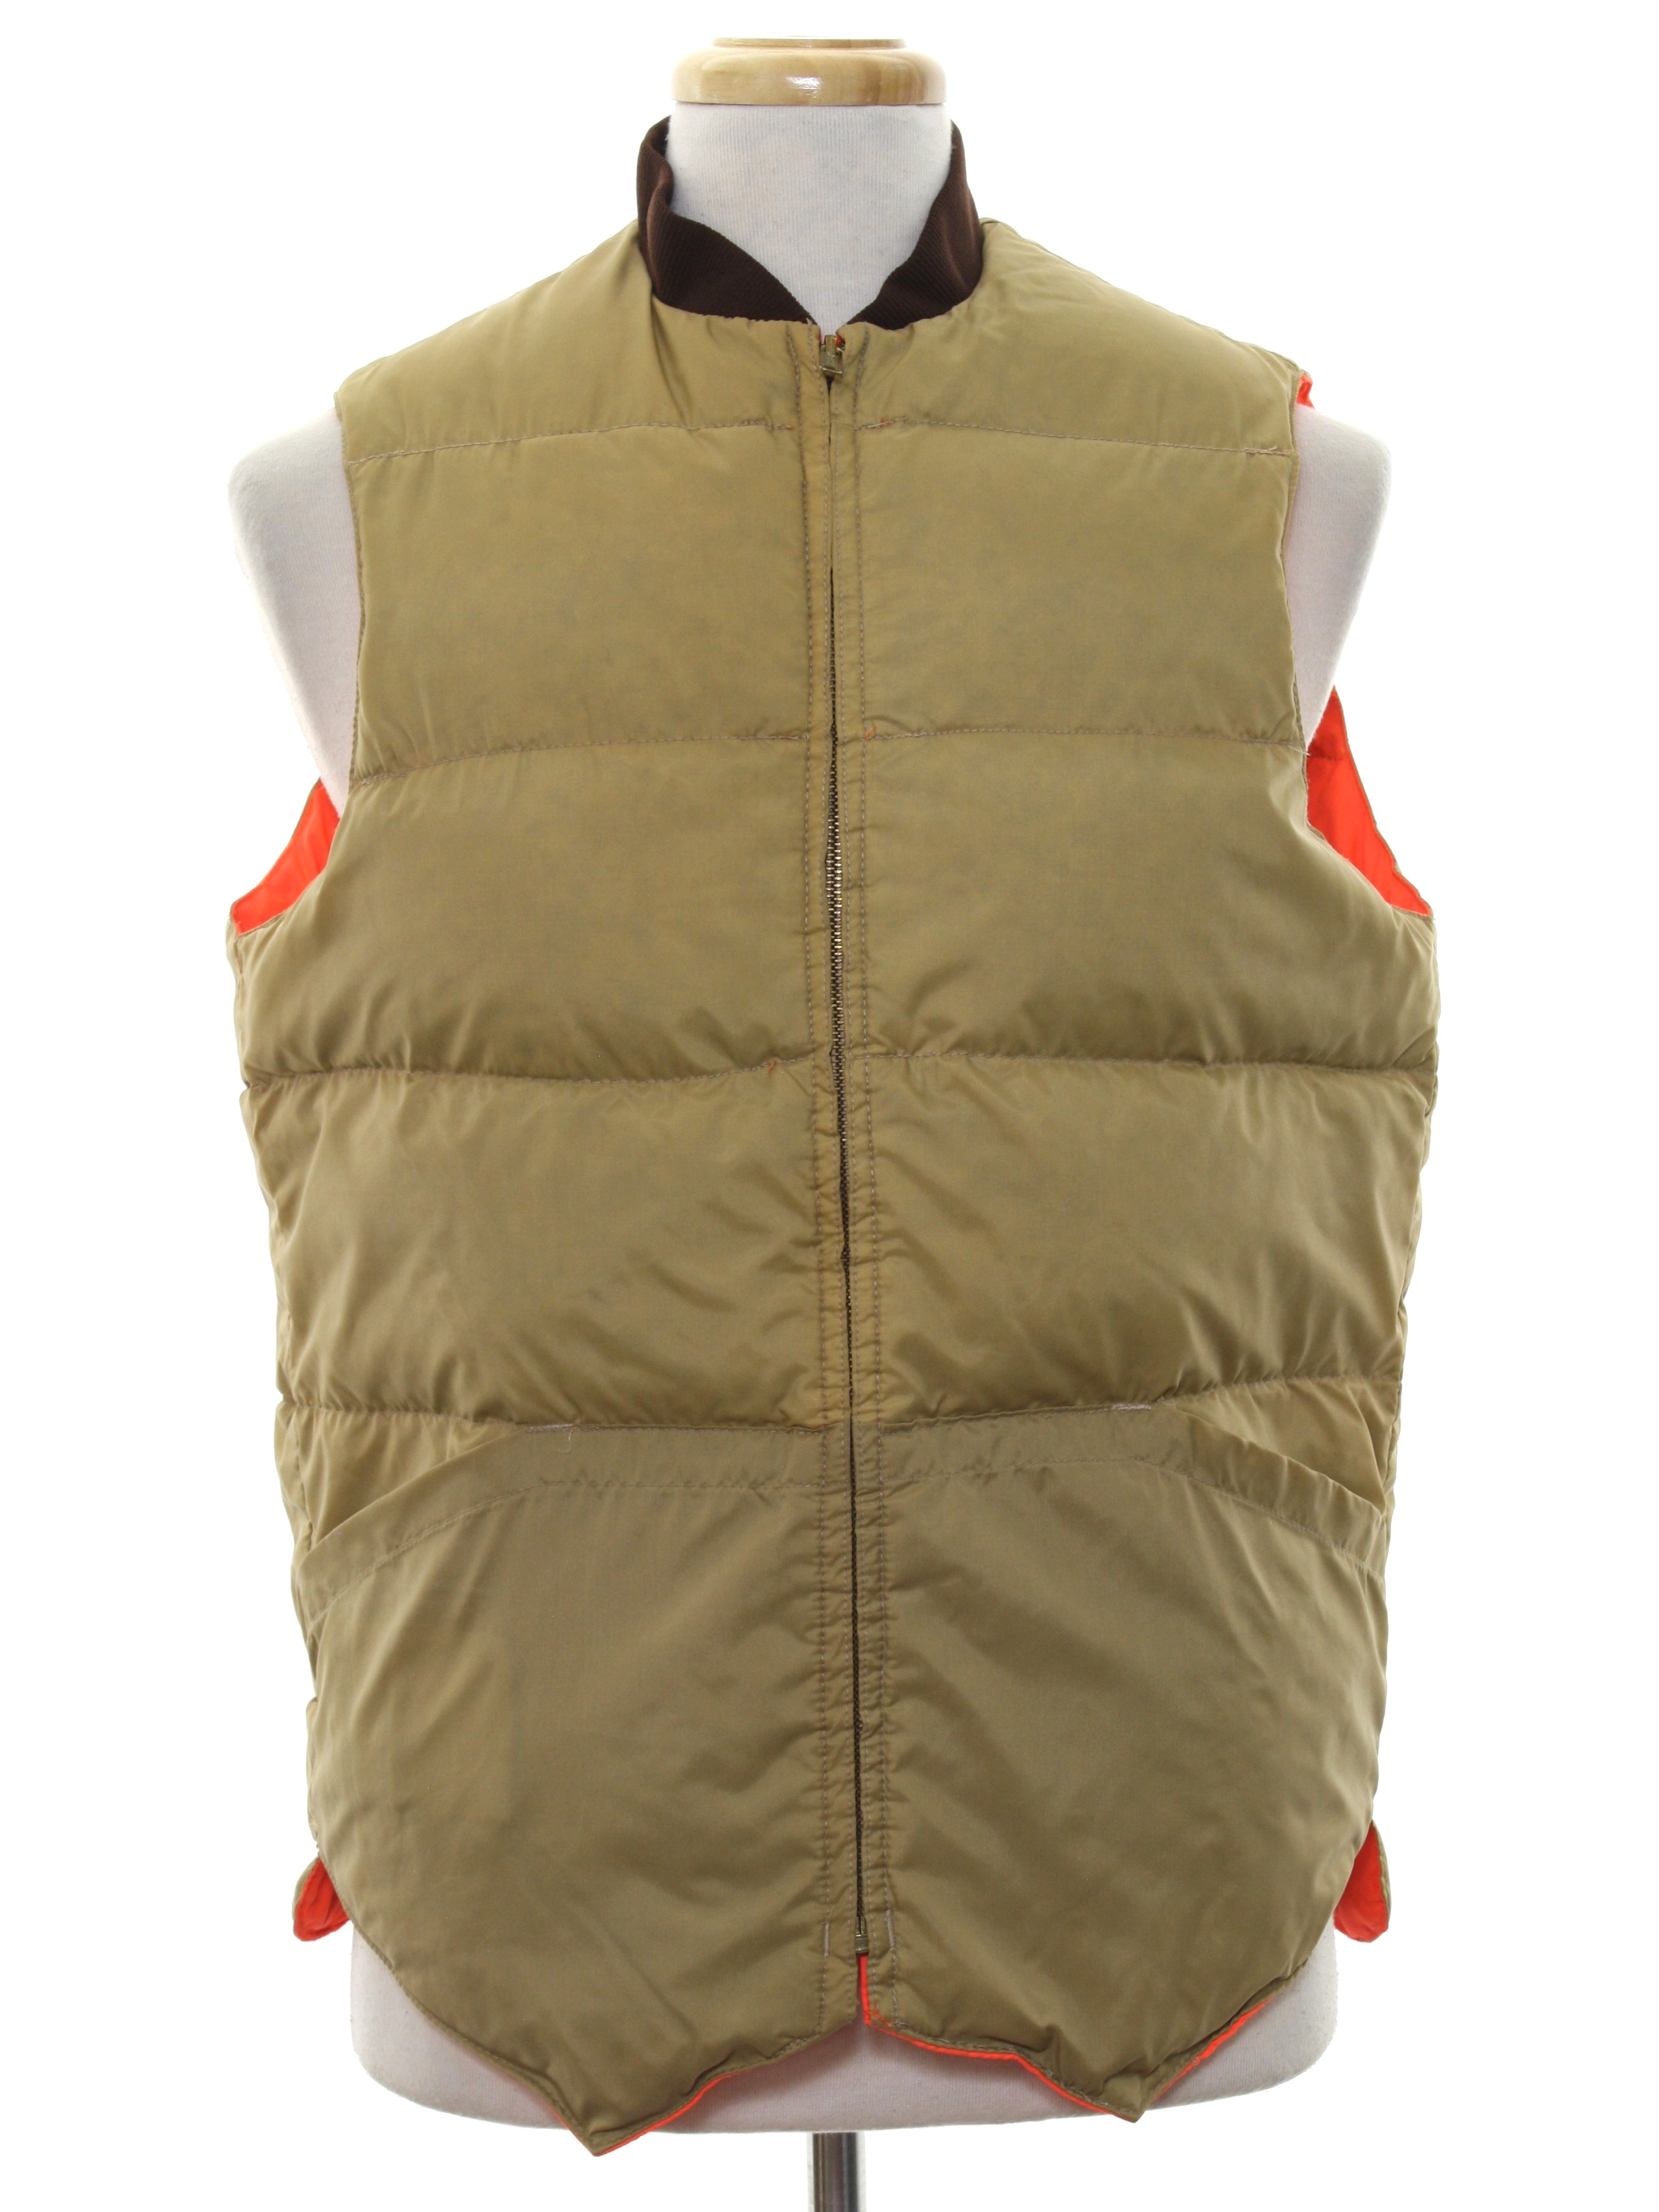 80s Kmart hunting vest